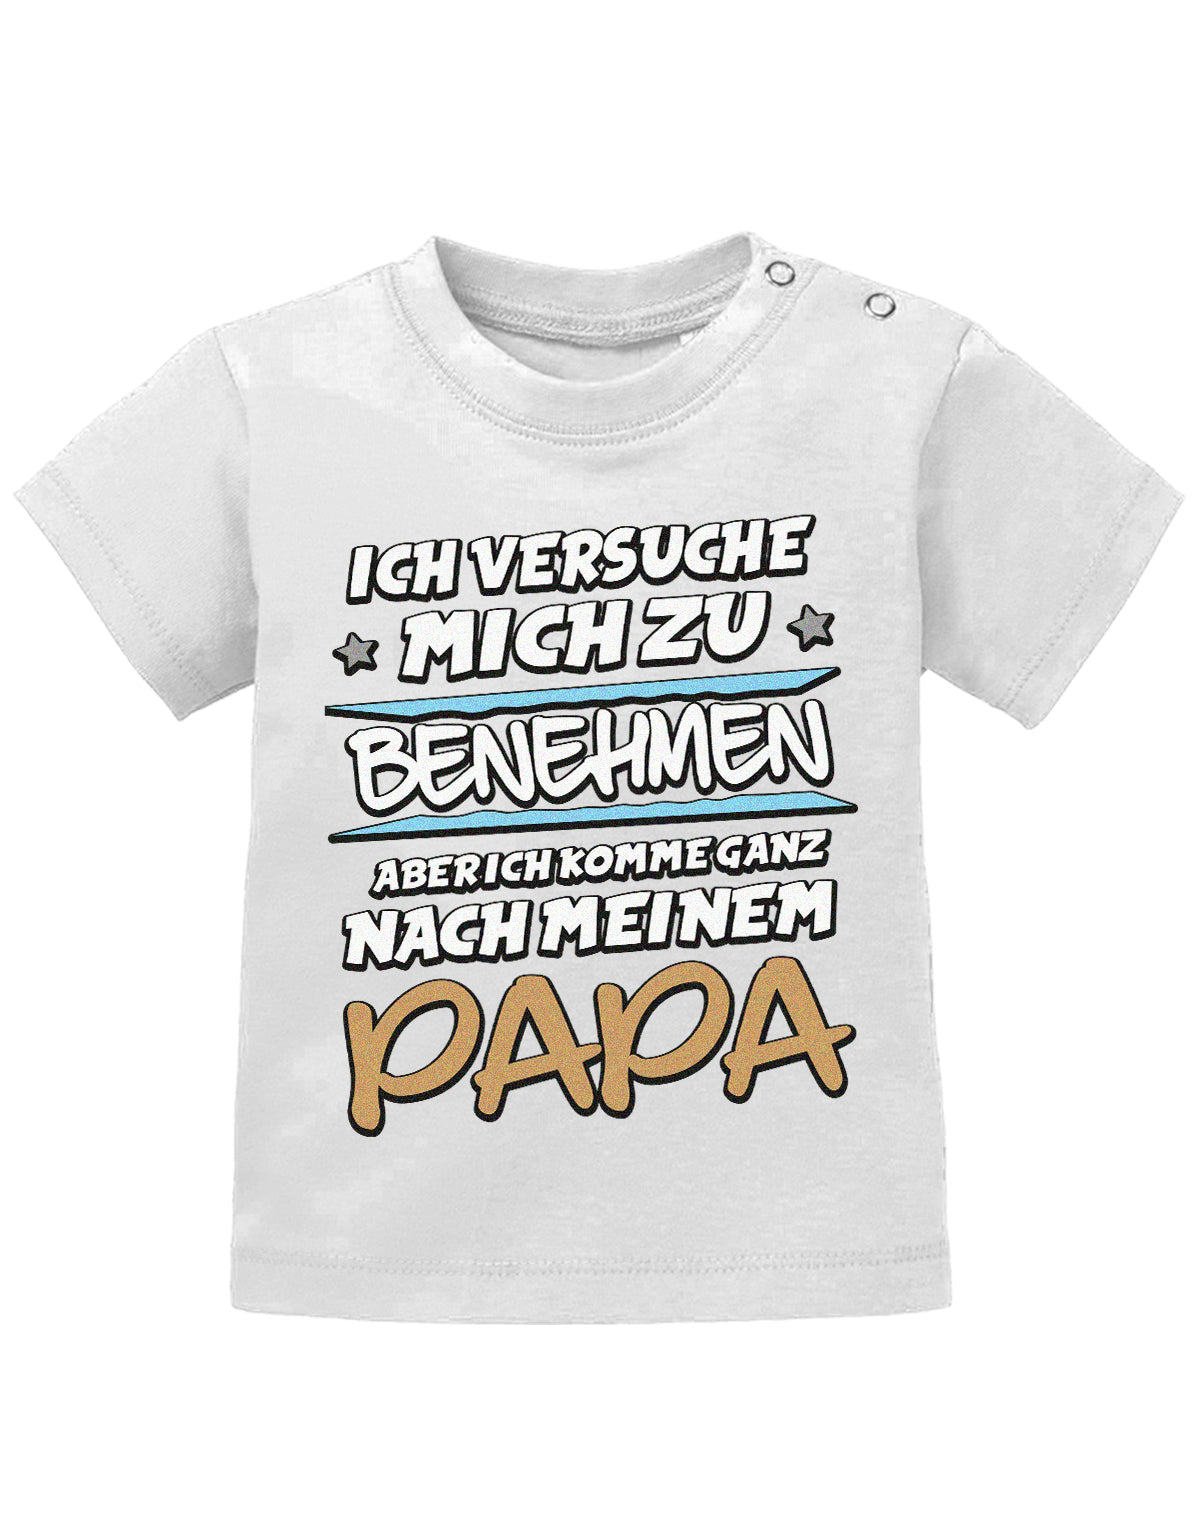 Papa Spruch Baby Shirt. Ich versuche mich zu benehmen, aber ich komme ganz nach meinem Papa. Weiss